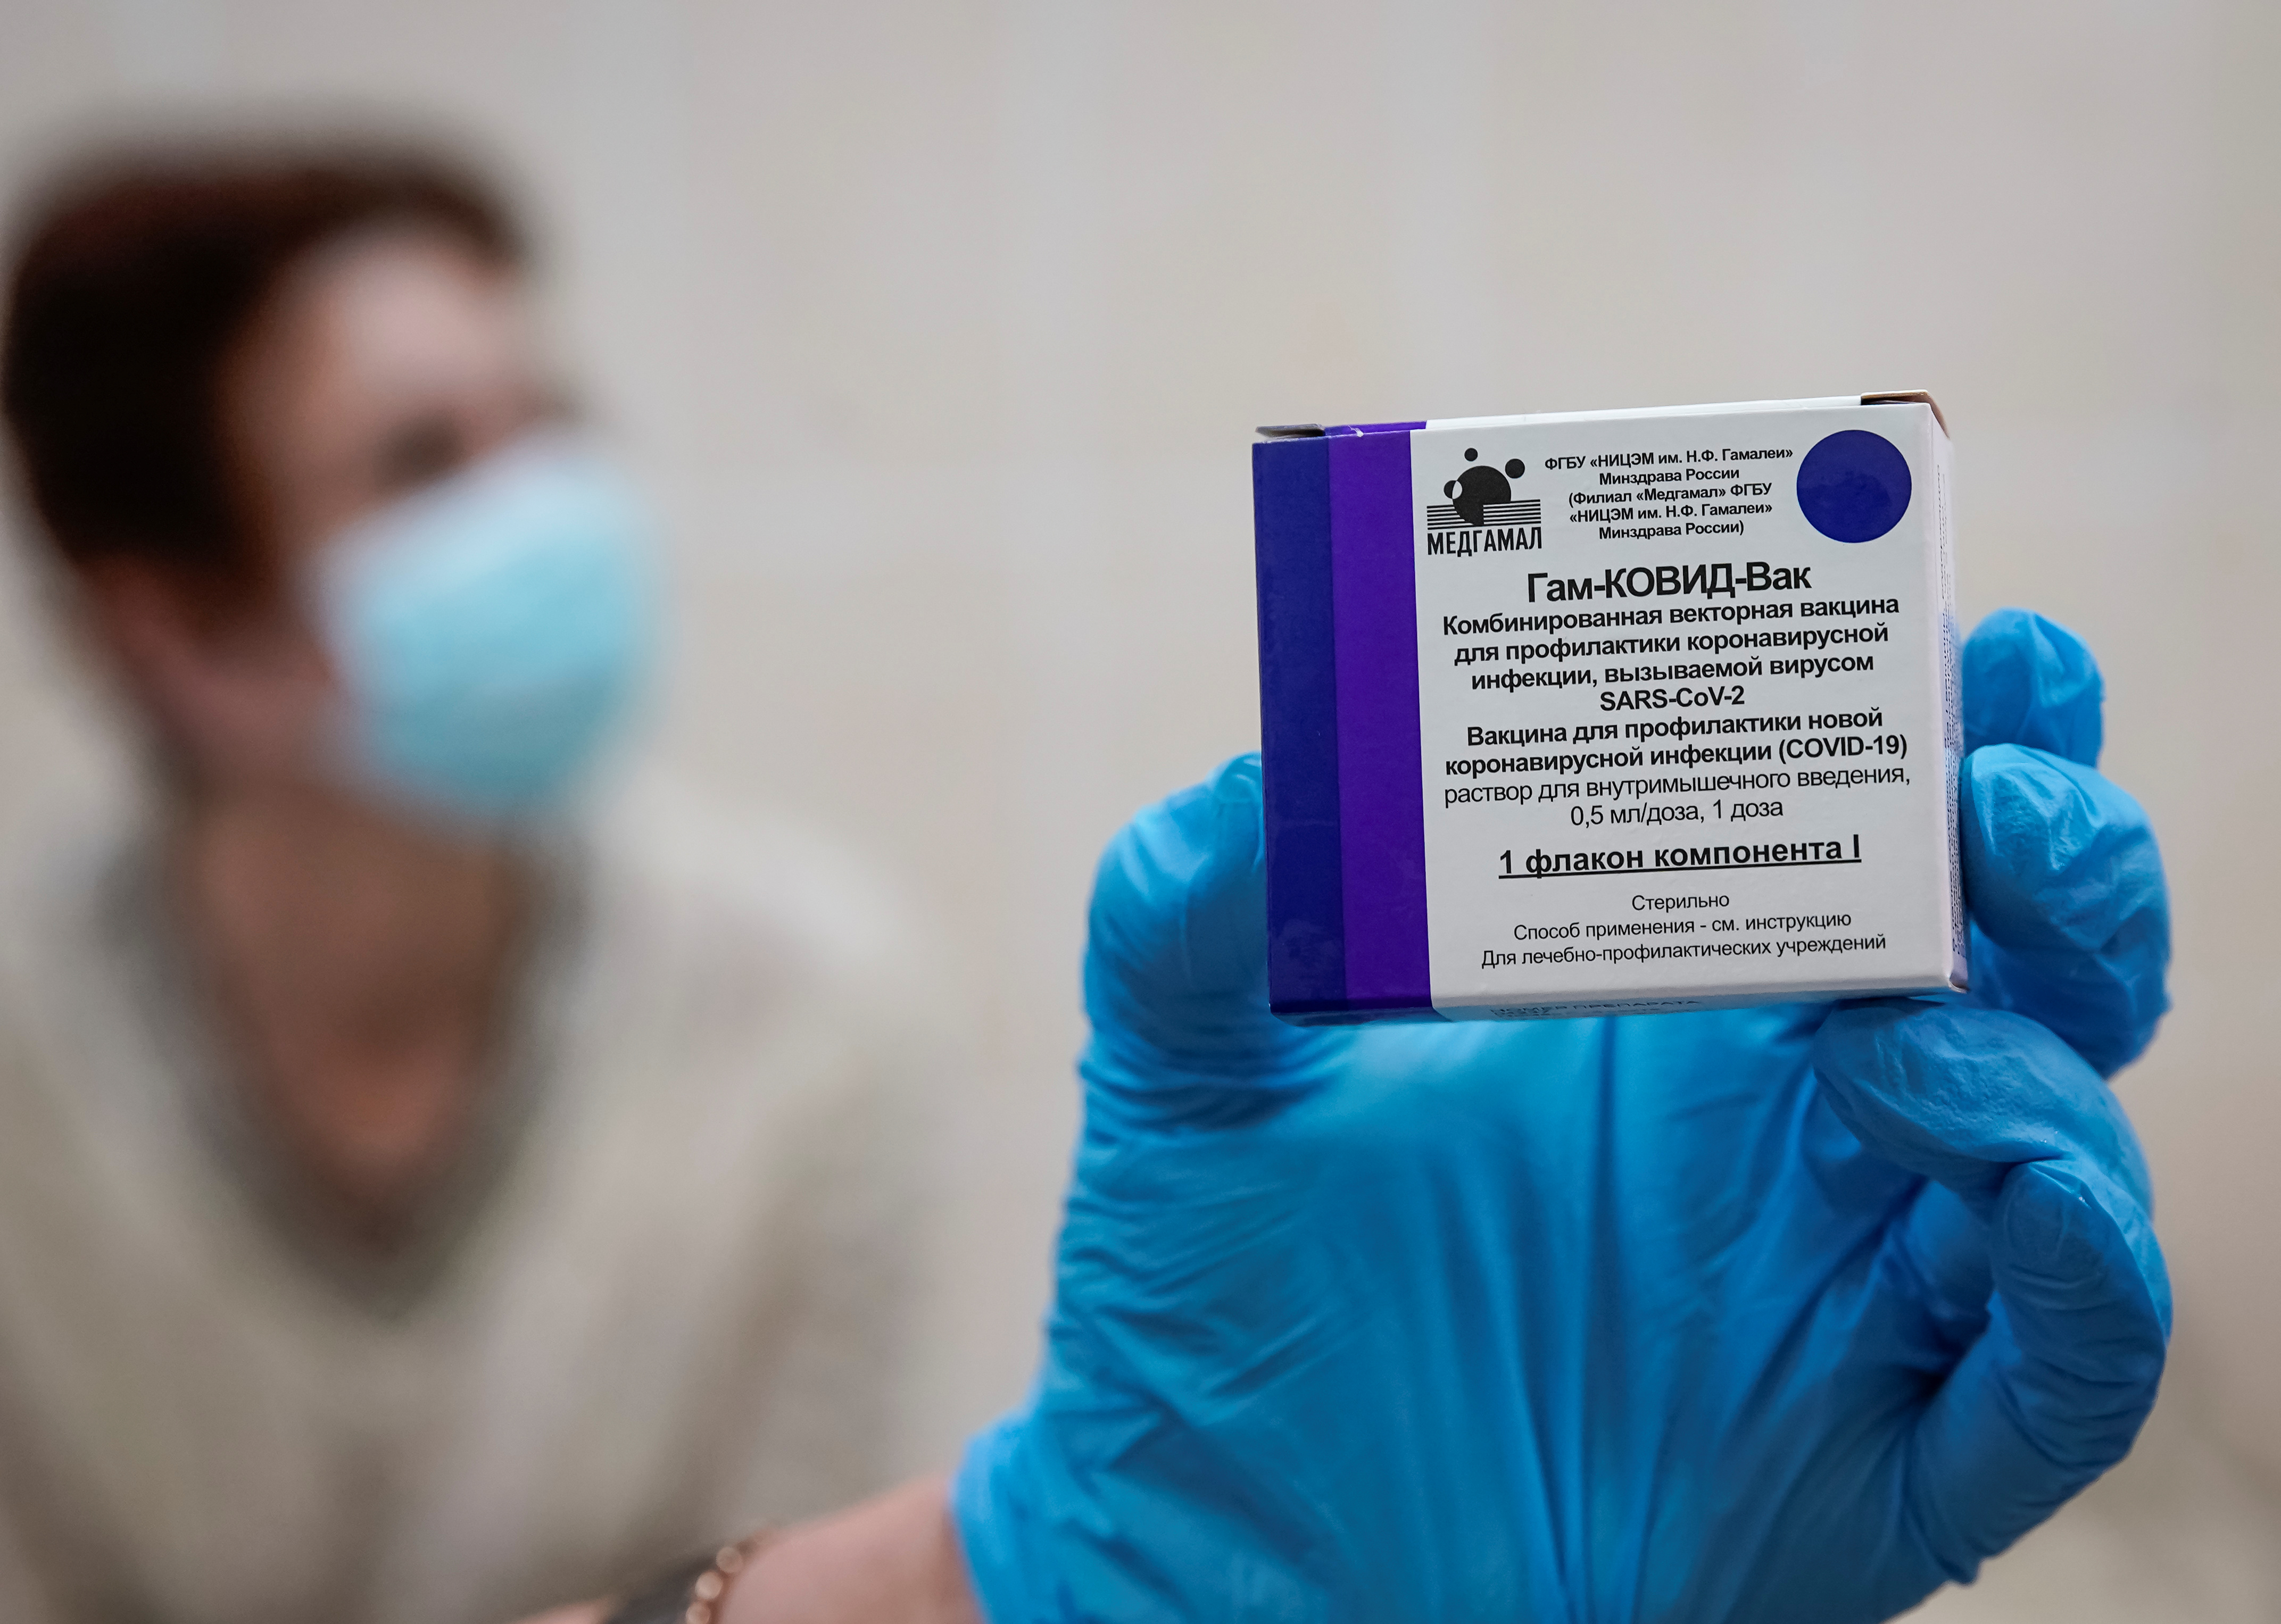 Una enfermera muestra el envase de la vacuna rusa que ya se distribuye en centros de salud para su testeo - REUTERS/Tatyana Makeyeva